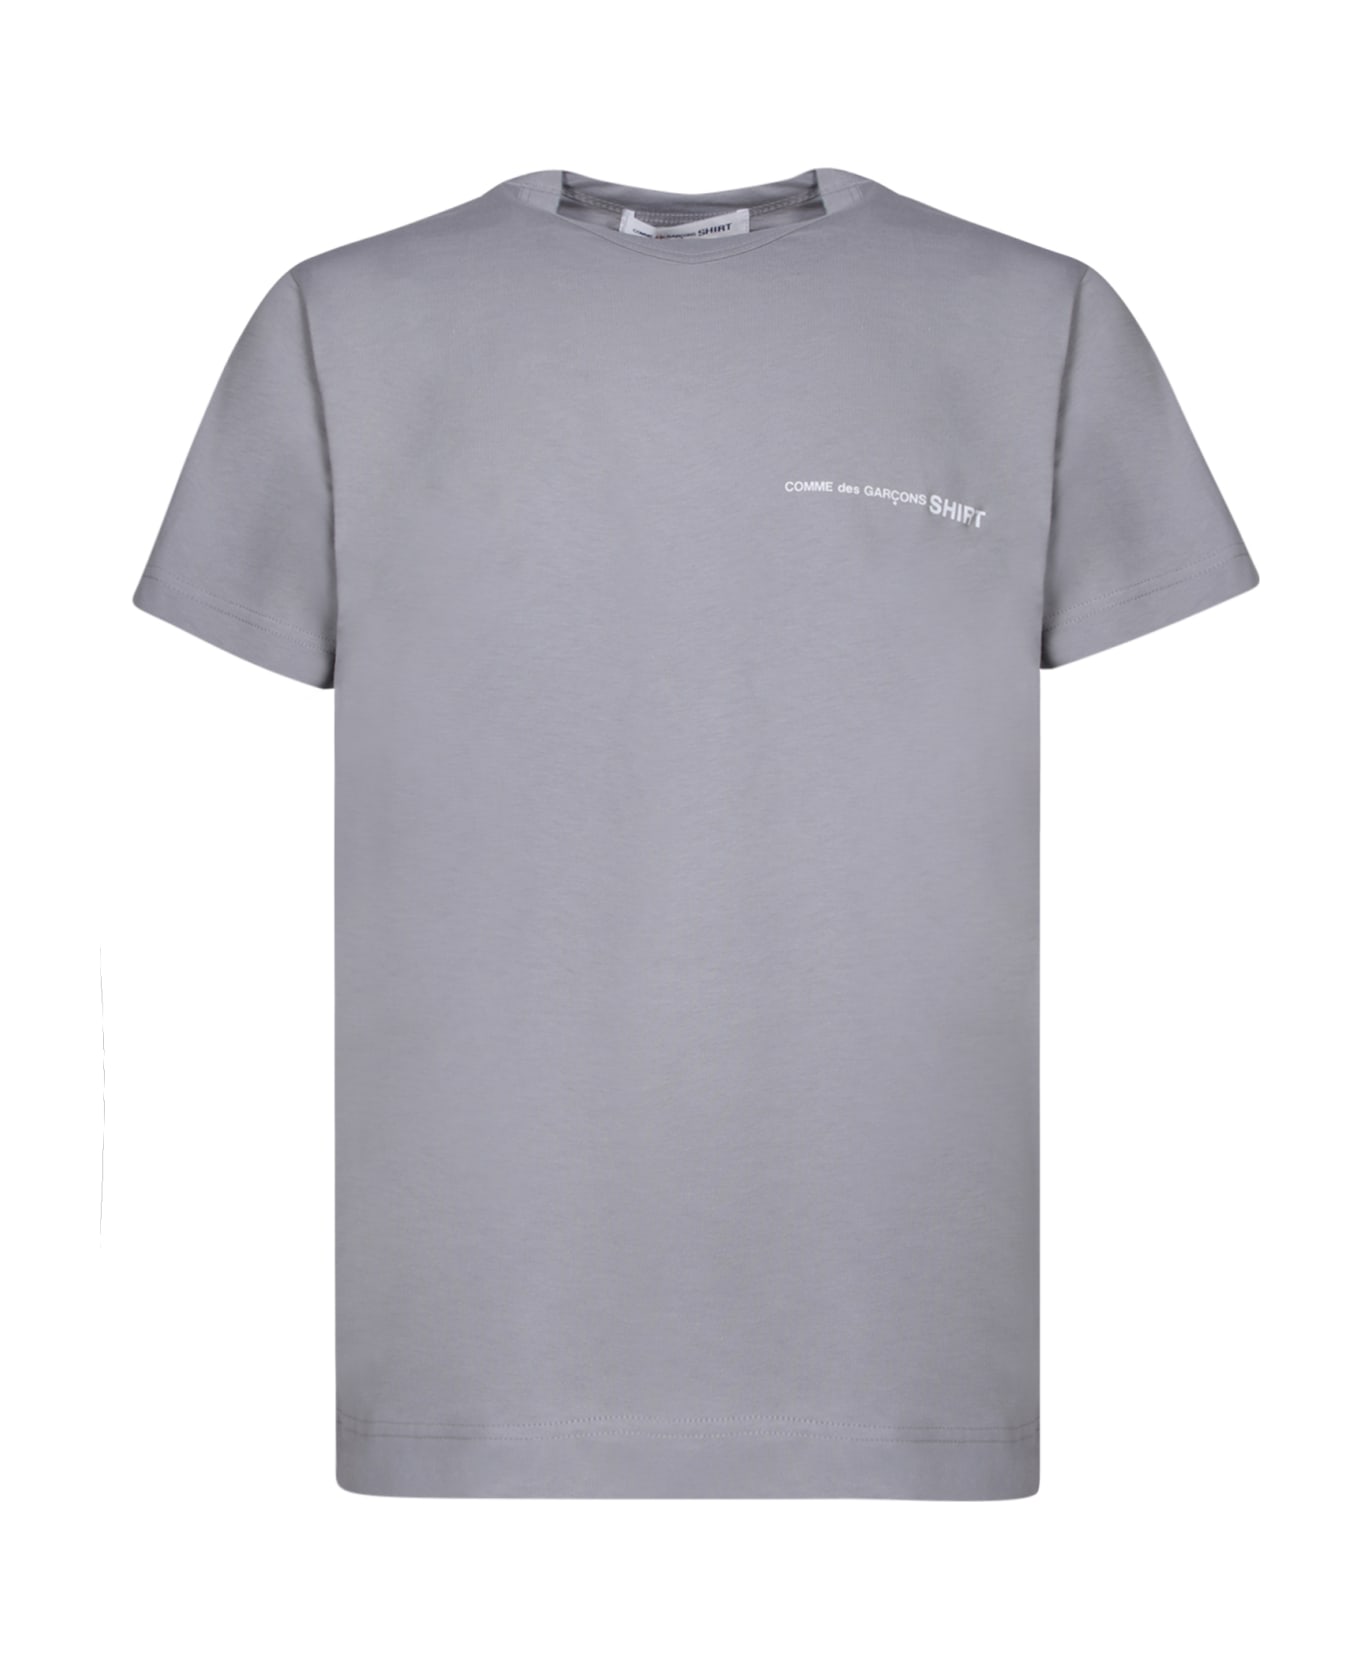 Comme des Garçons Shirt Regular Fit Grey T-shirt - Grey